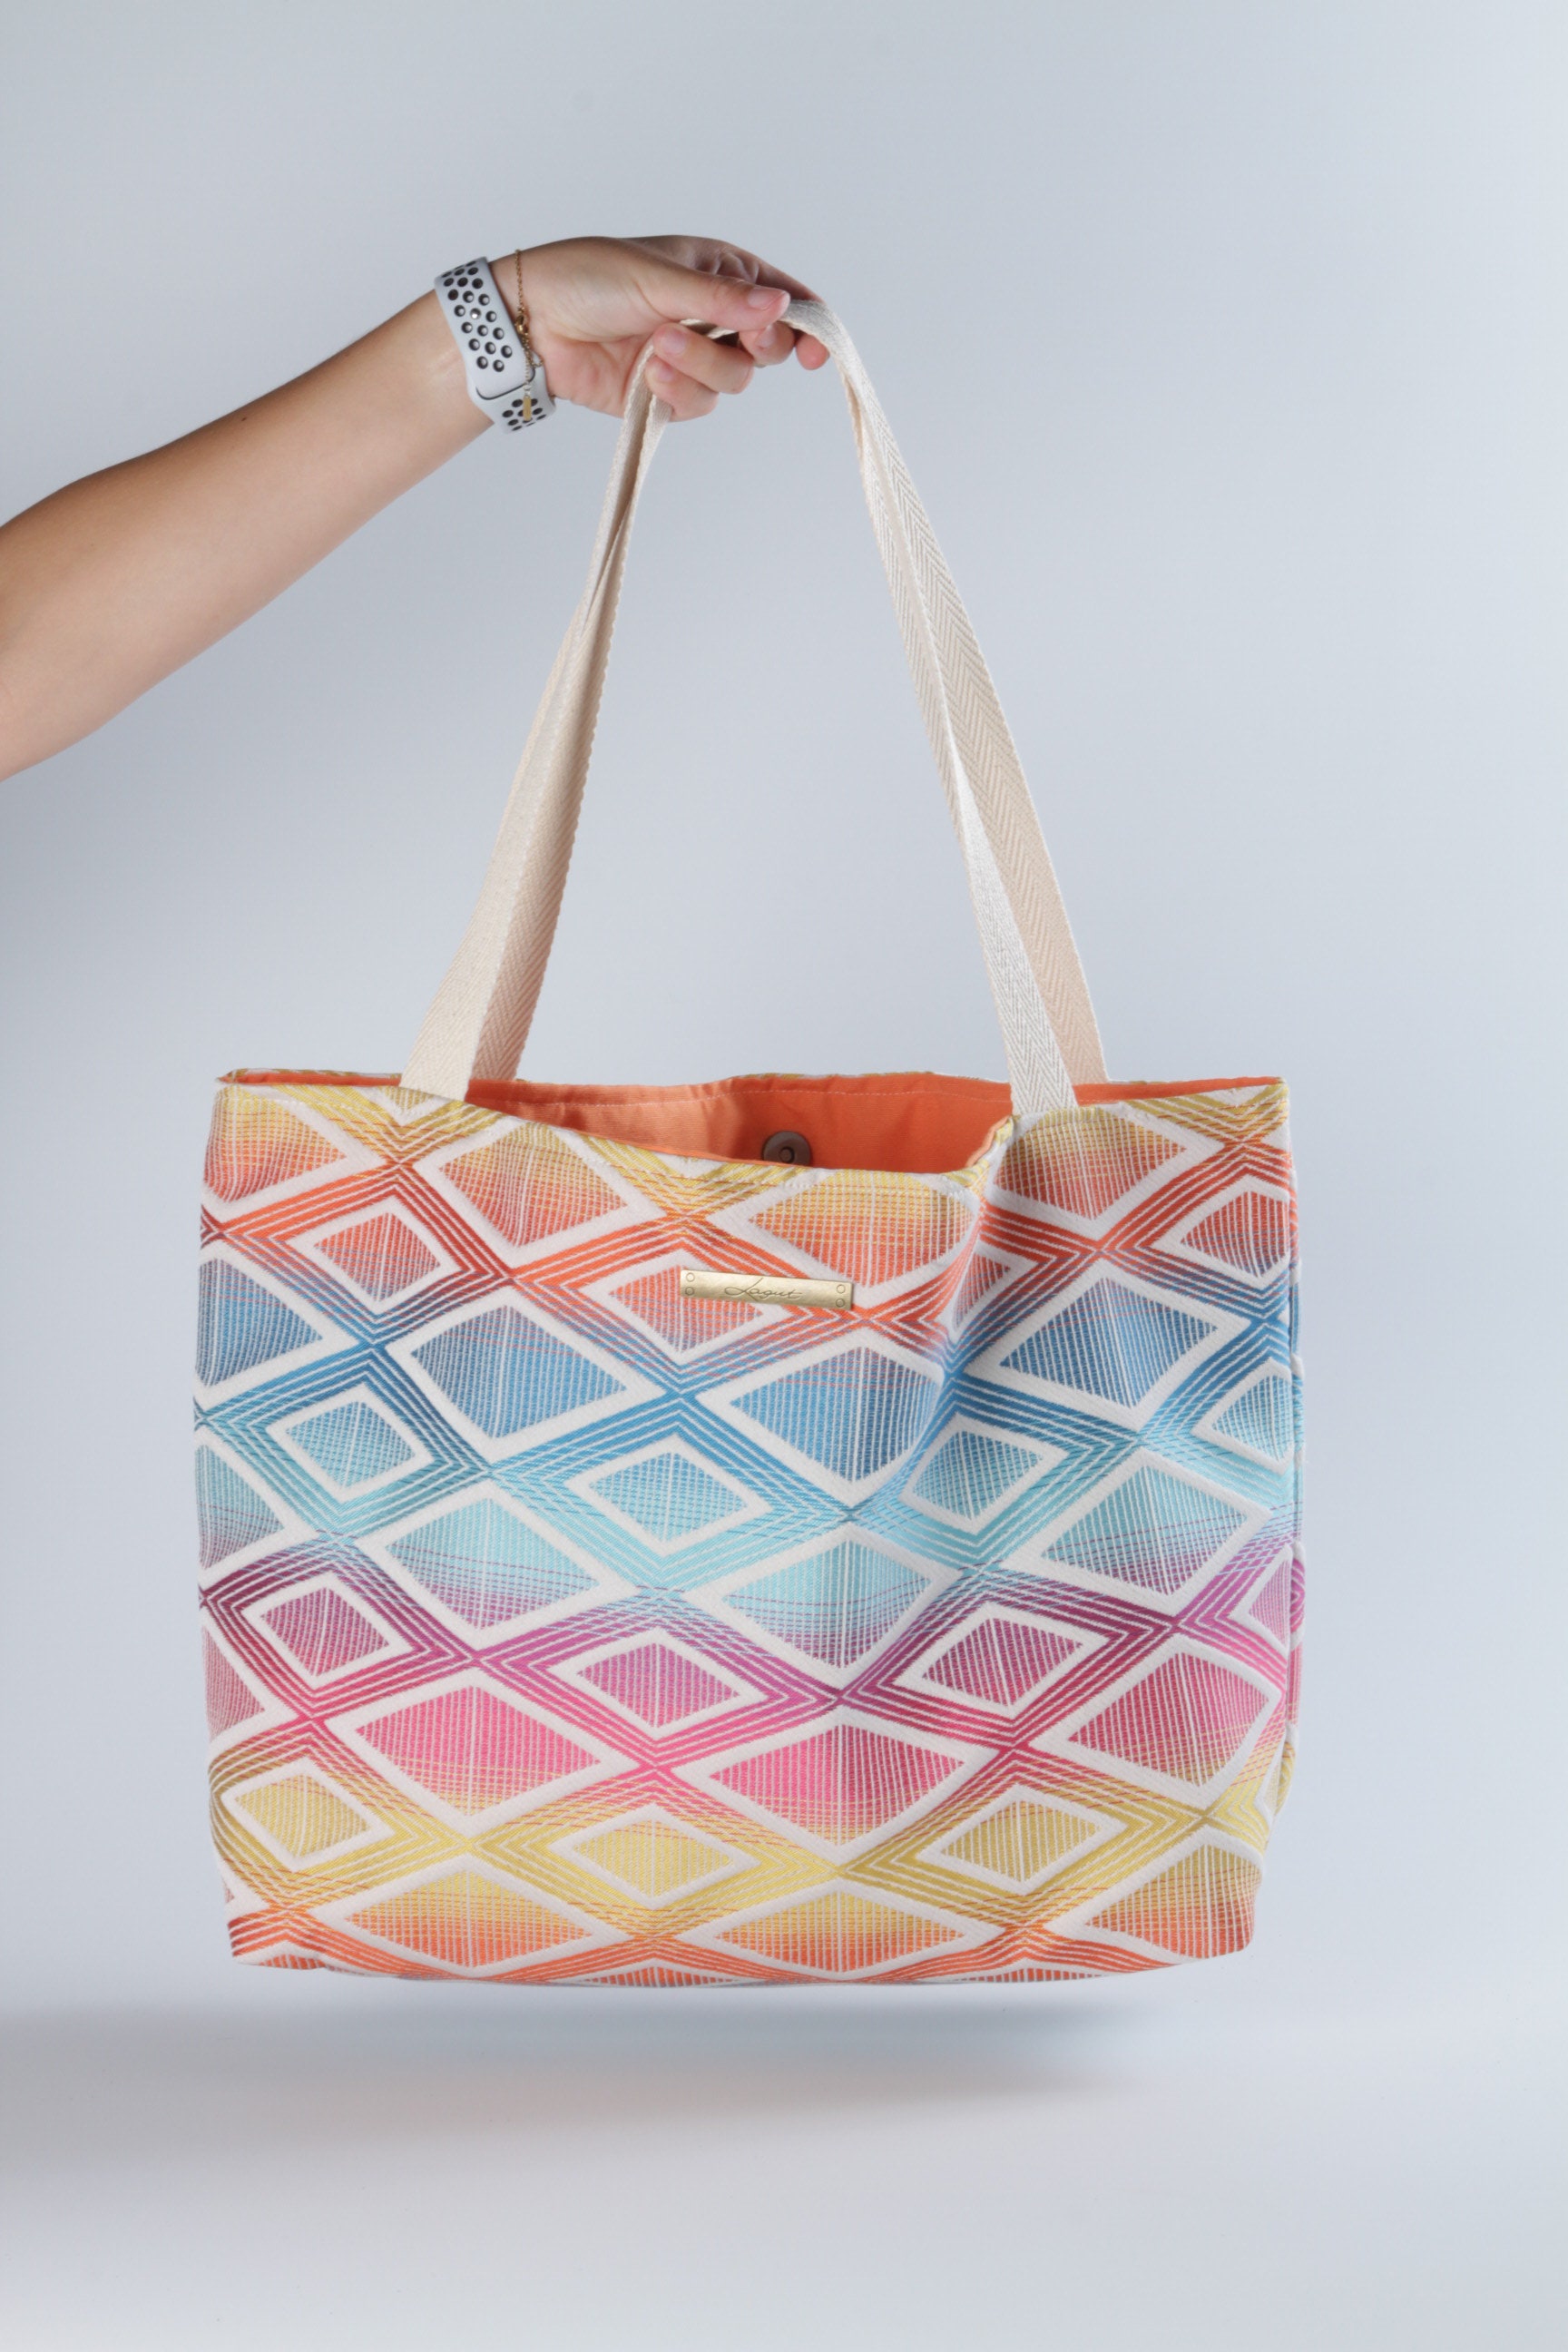 Colorful Tote Bag Canvas Summer Bag Rainbow Shoulder Bag | Etsy